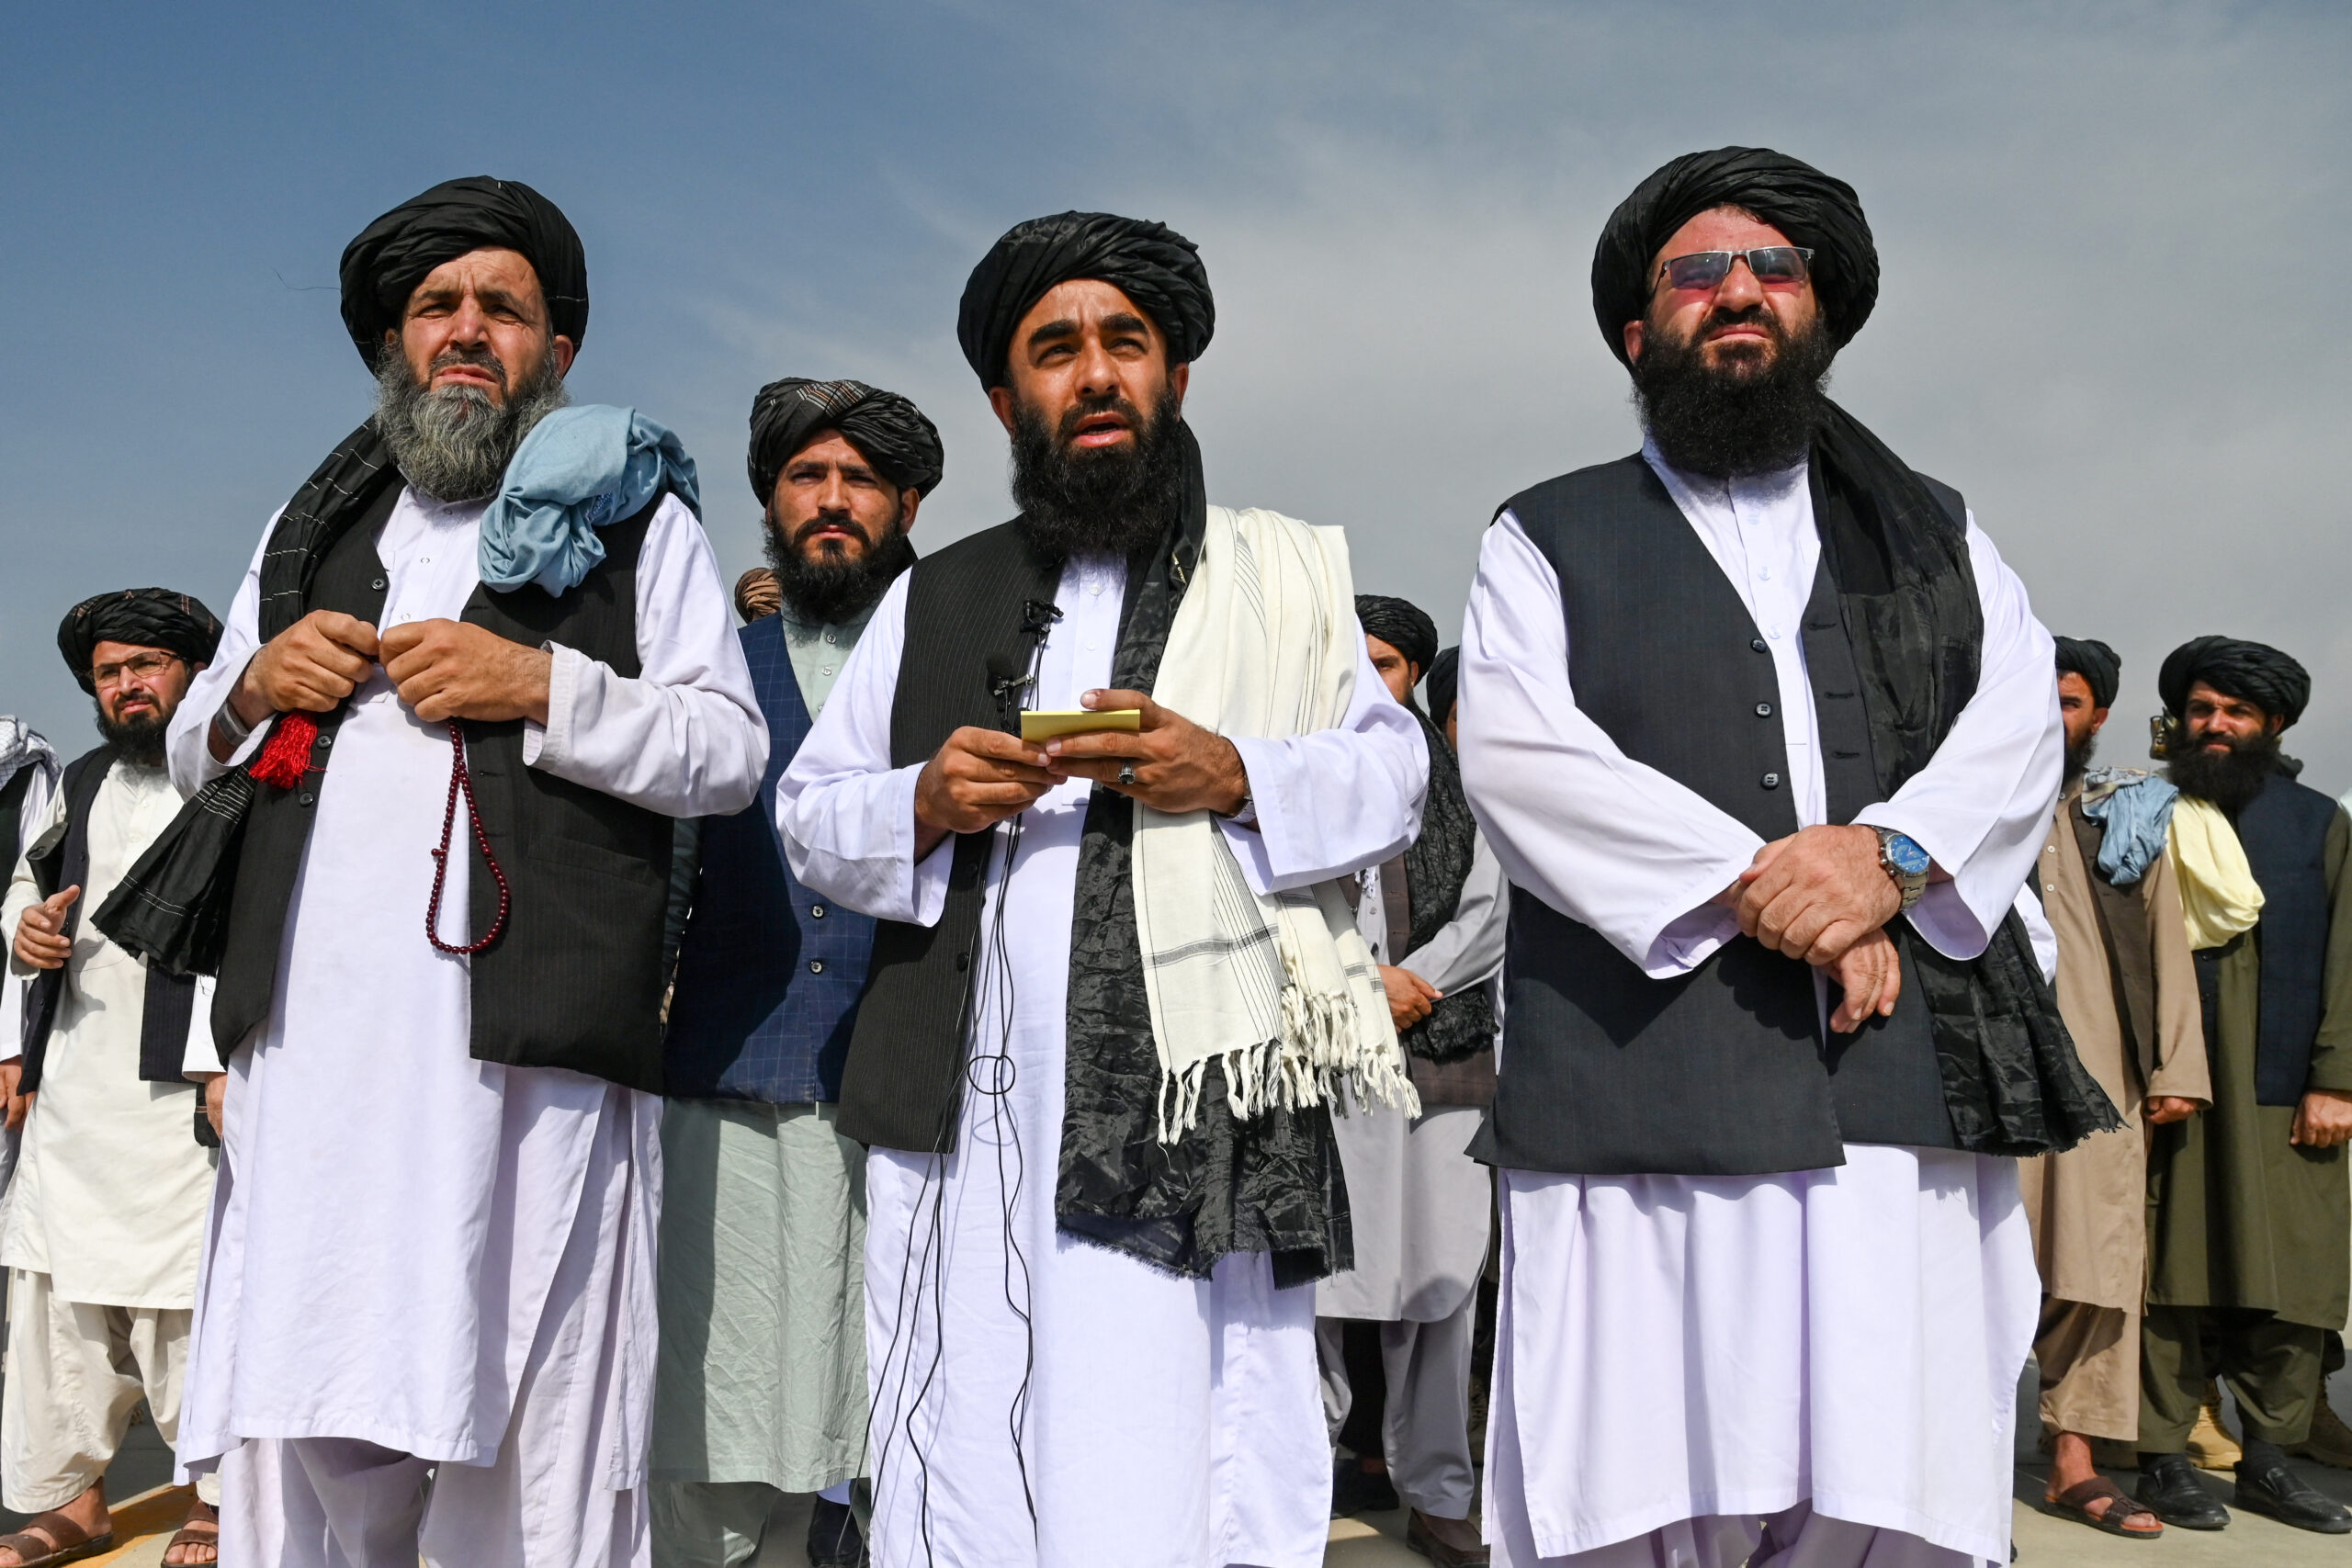 ตาลีบัน ยิงปืนฉลอง หลังสหรัฐถอนกองทัพ ออกจากอัฟกานิสถาน – ต่างประเทศ